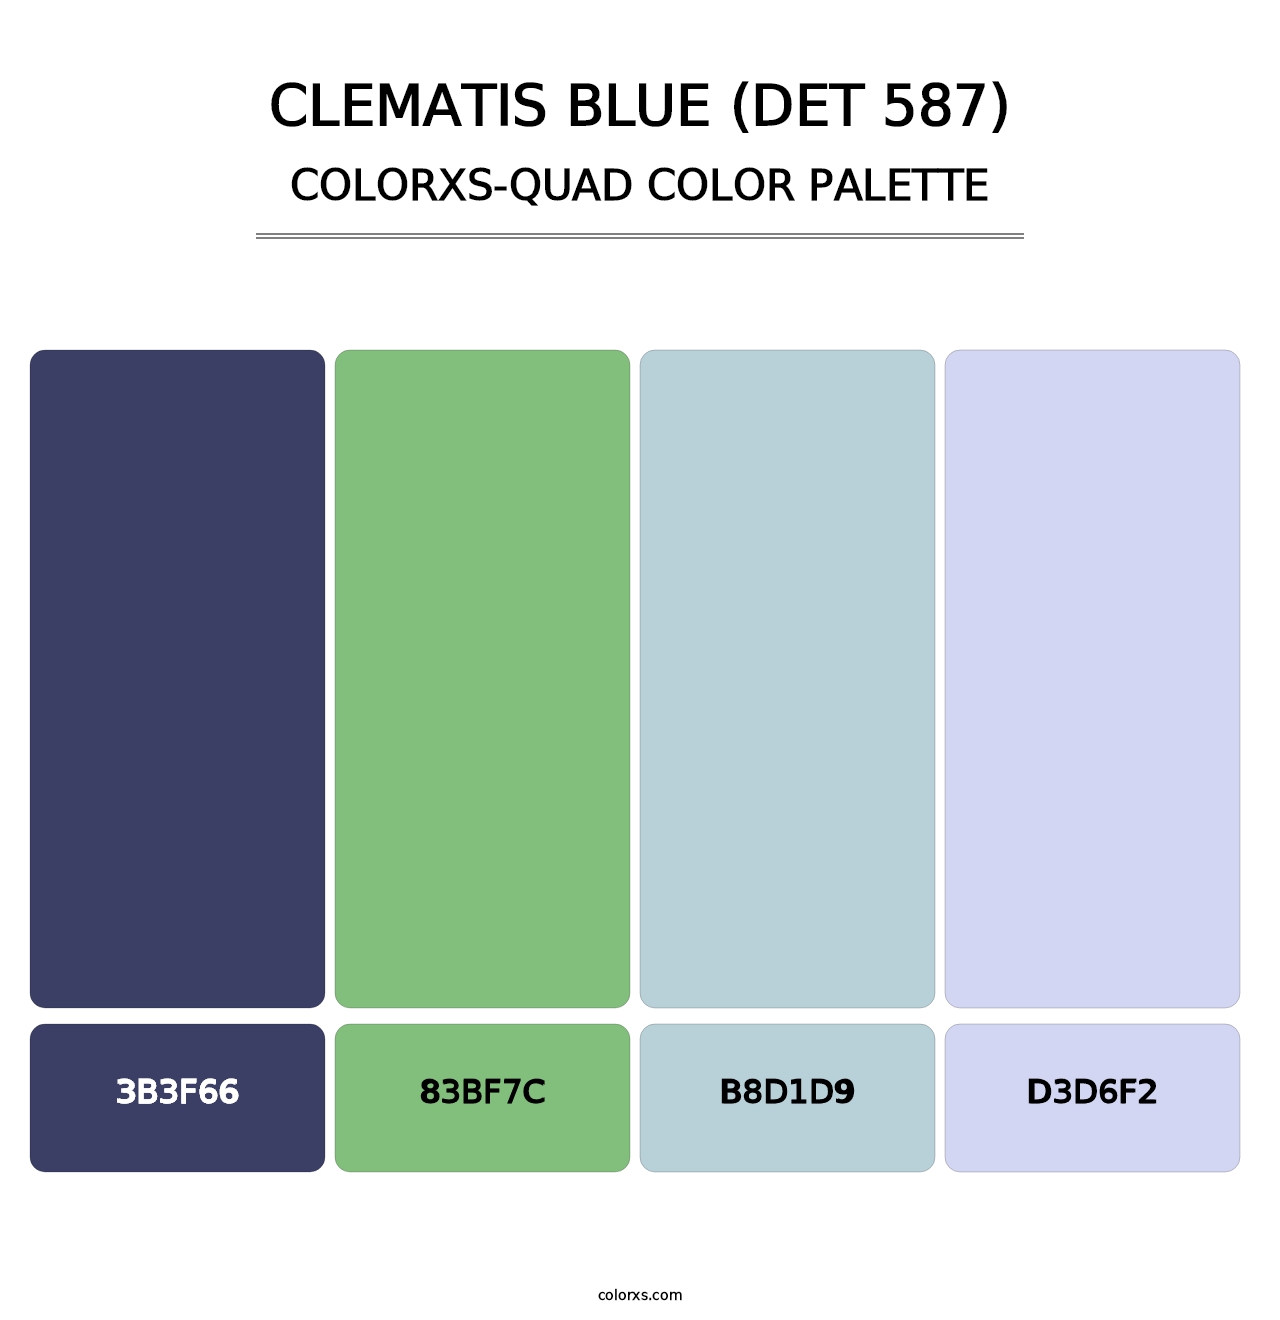 Clematis Blue (DET 587) - Colorxs Quad Palette